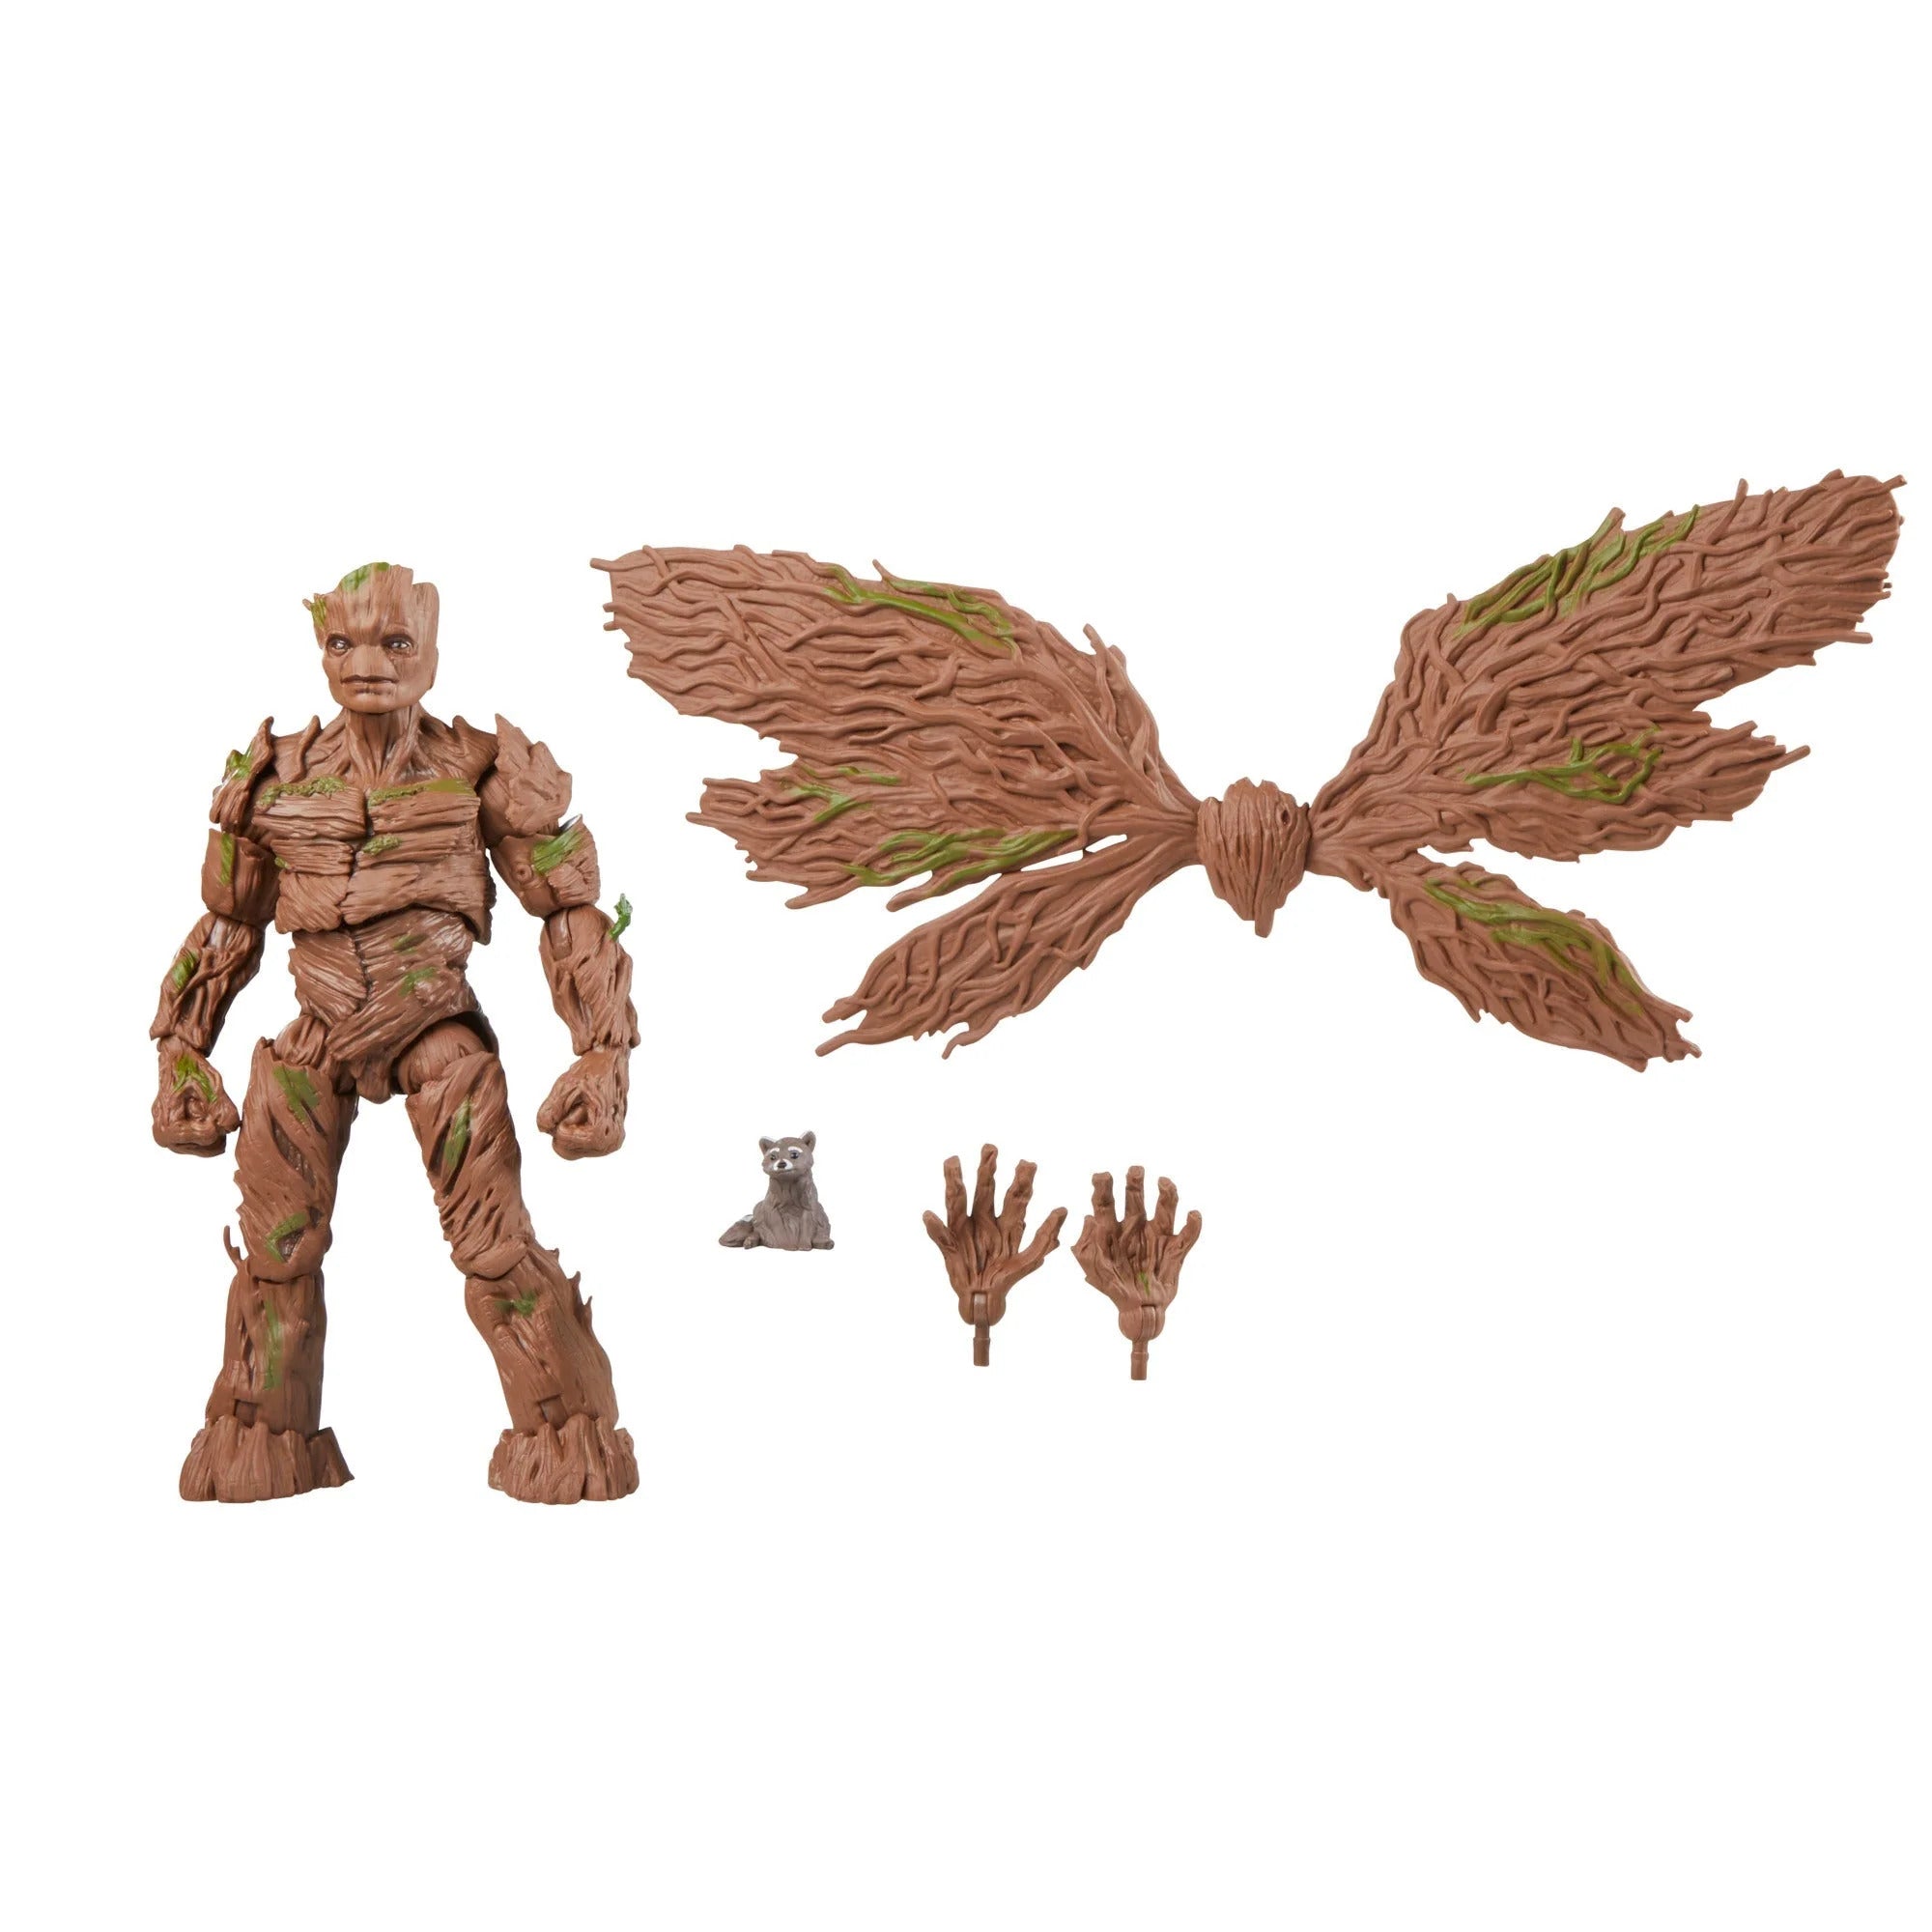 Marvel Legends Series Figurine Groot Deluxe (15 cm)